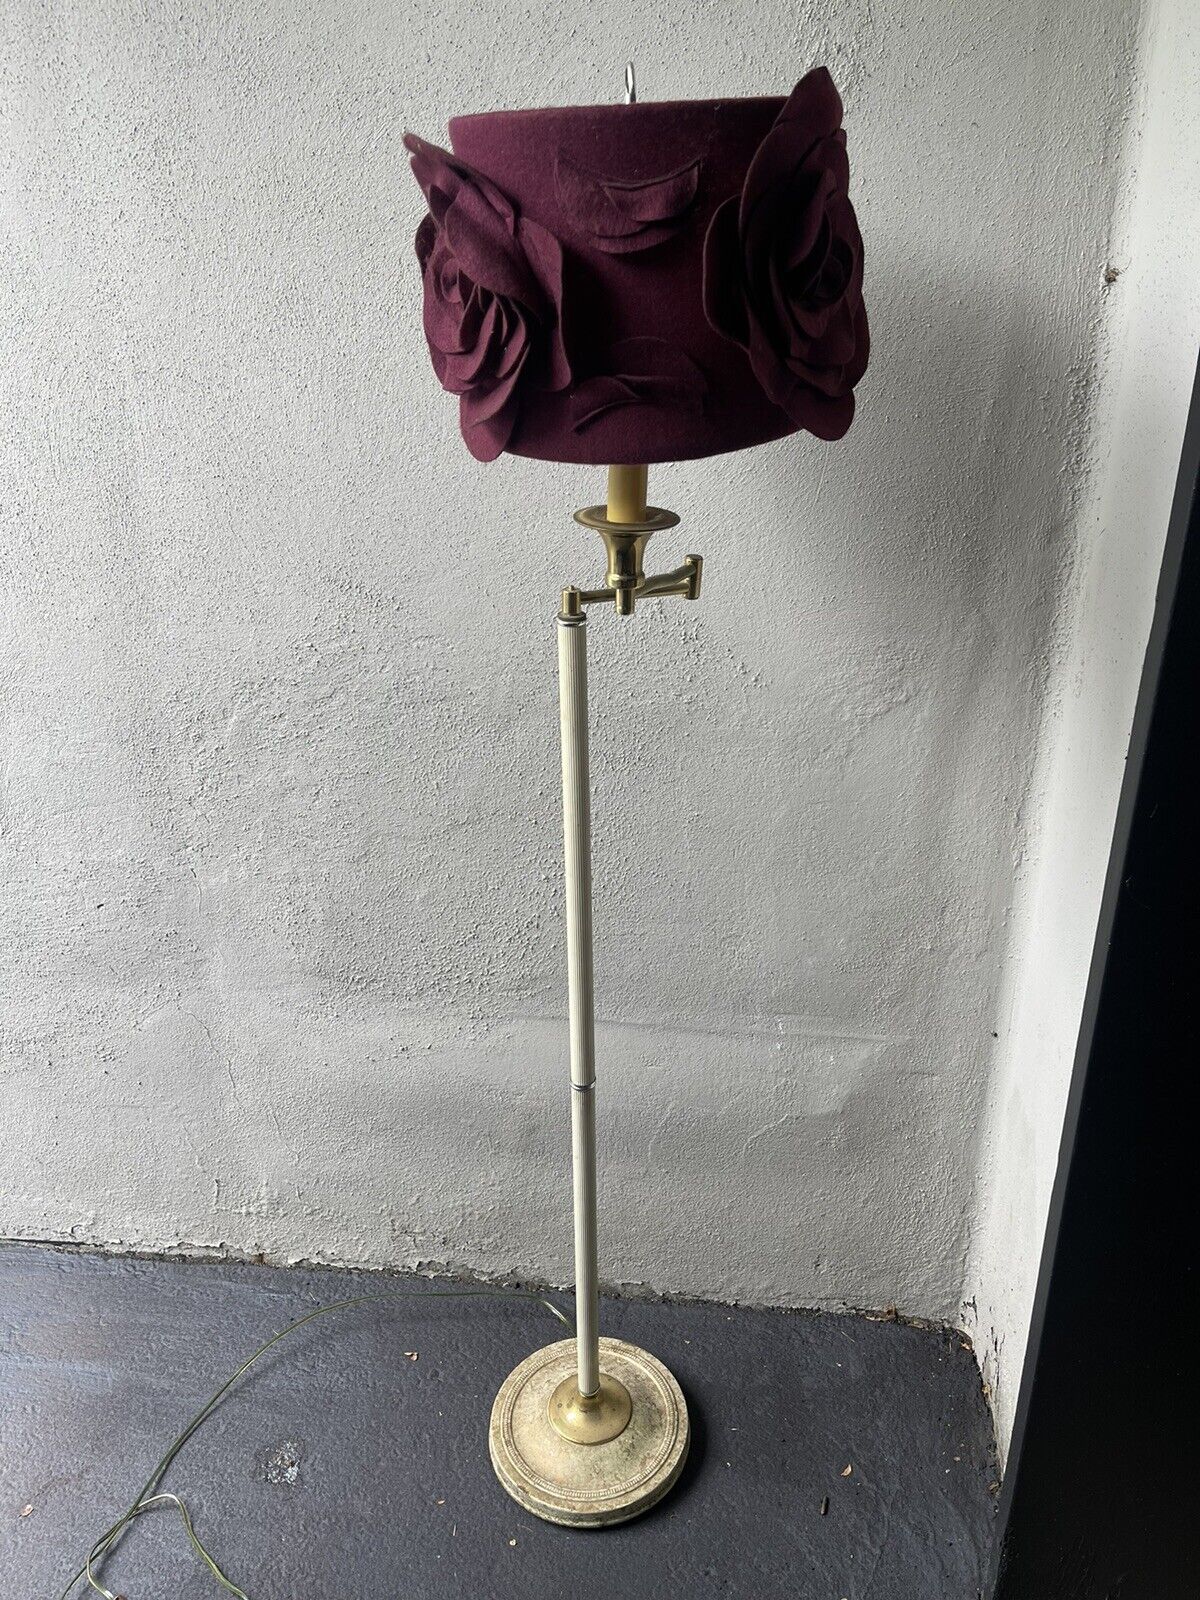 Vintage Standing Lamp